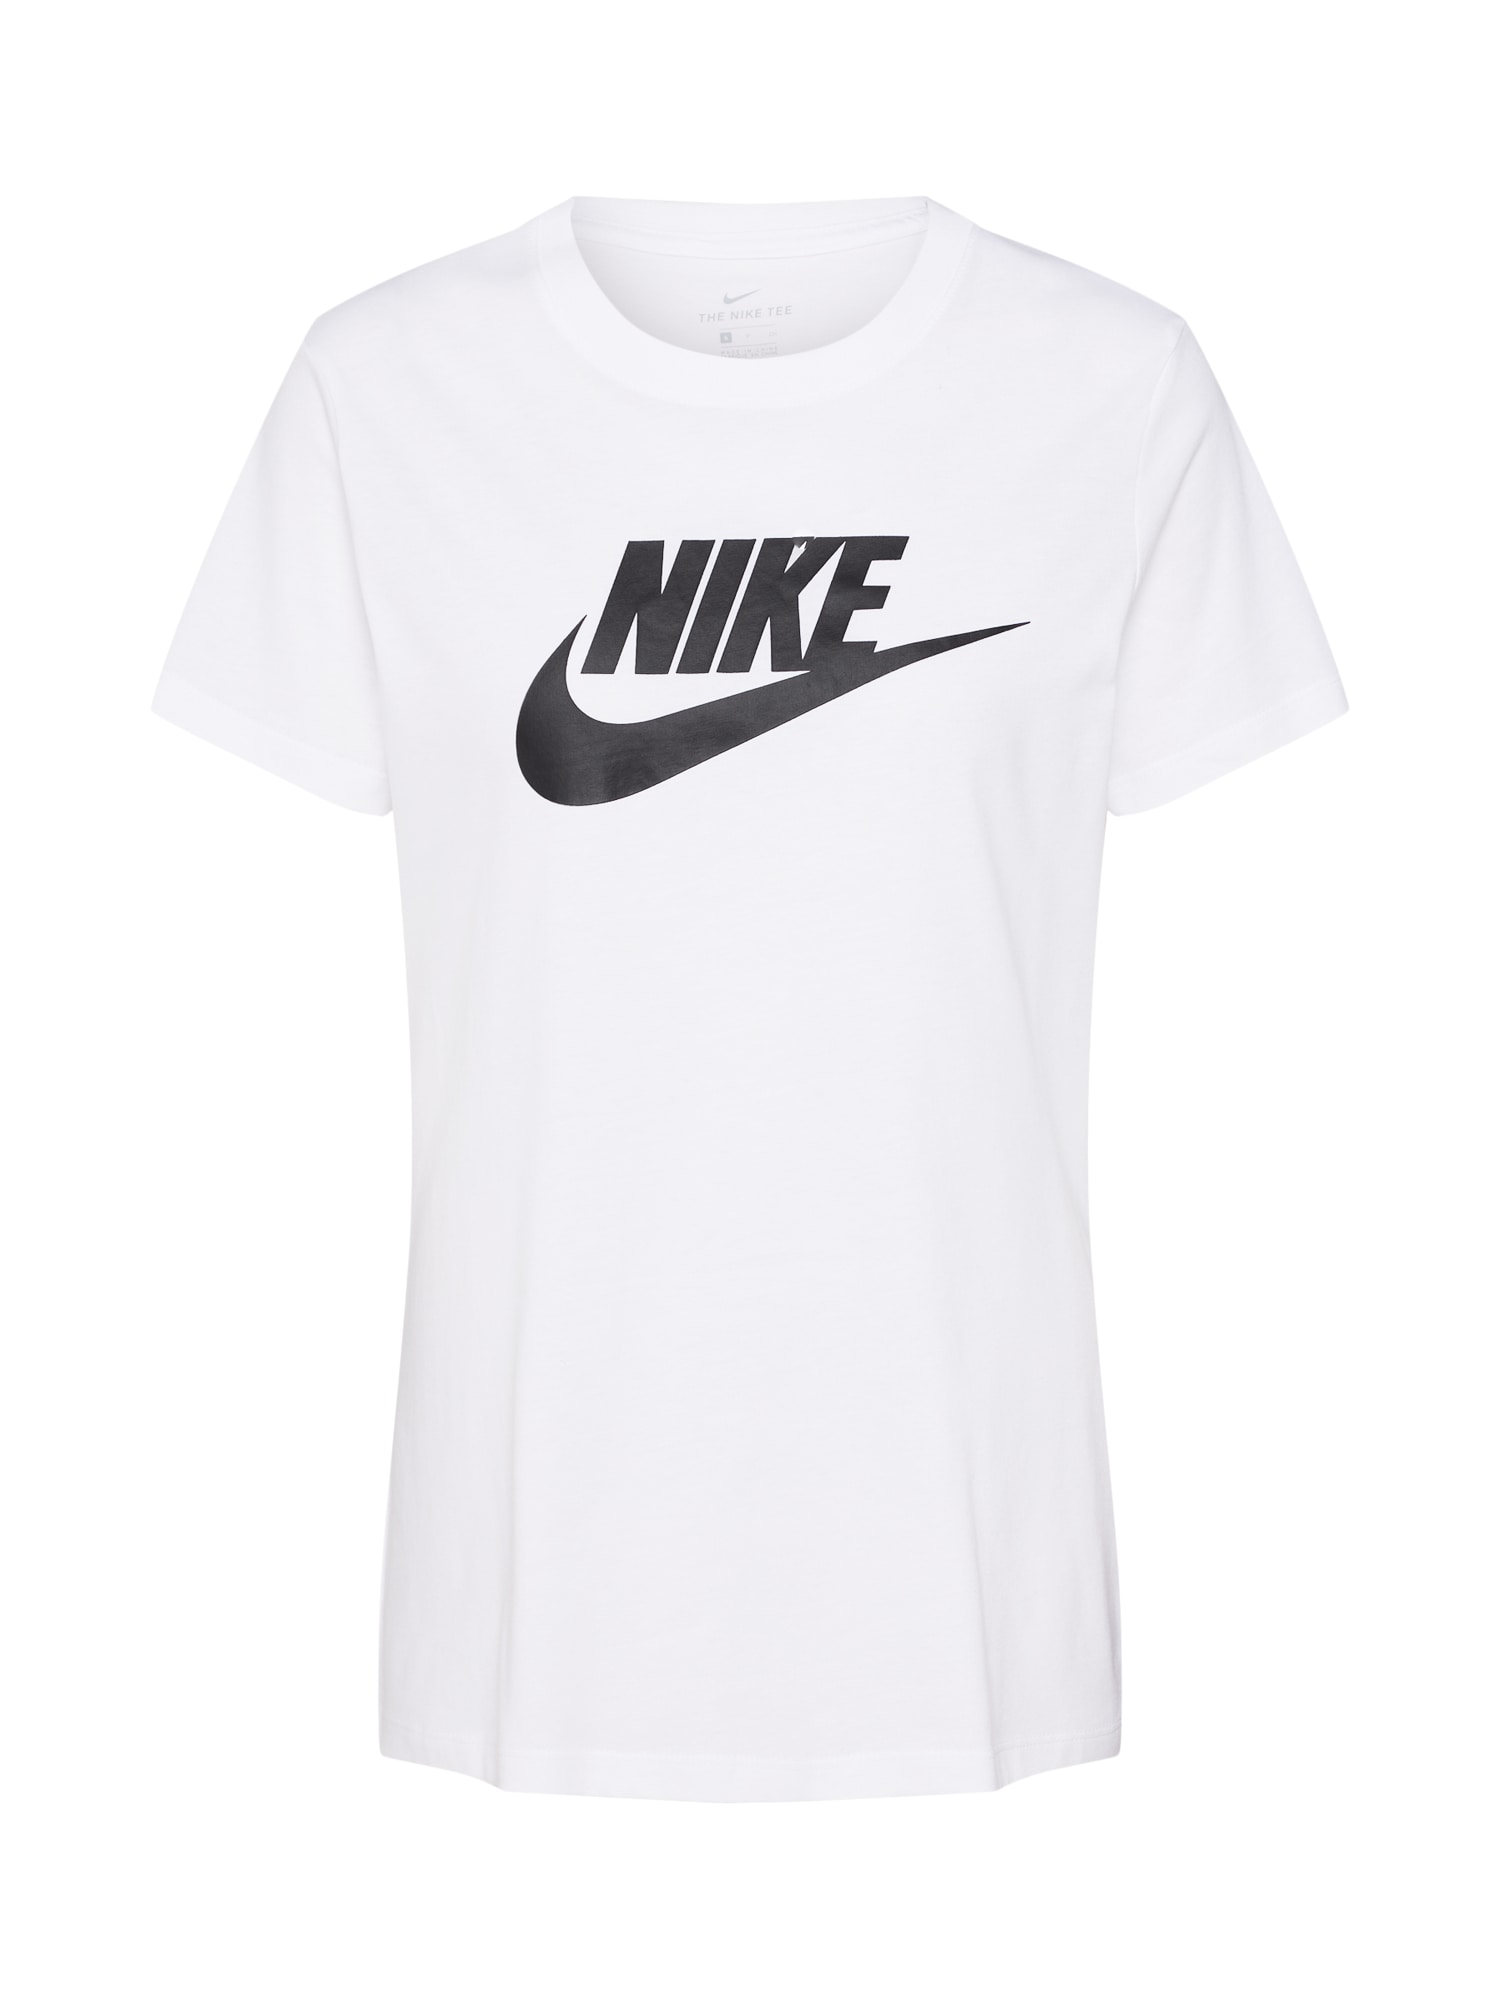 Nike Sportswear Marškinėliai 'Futura' juoda / balta